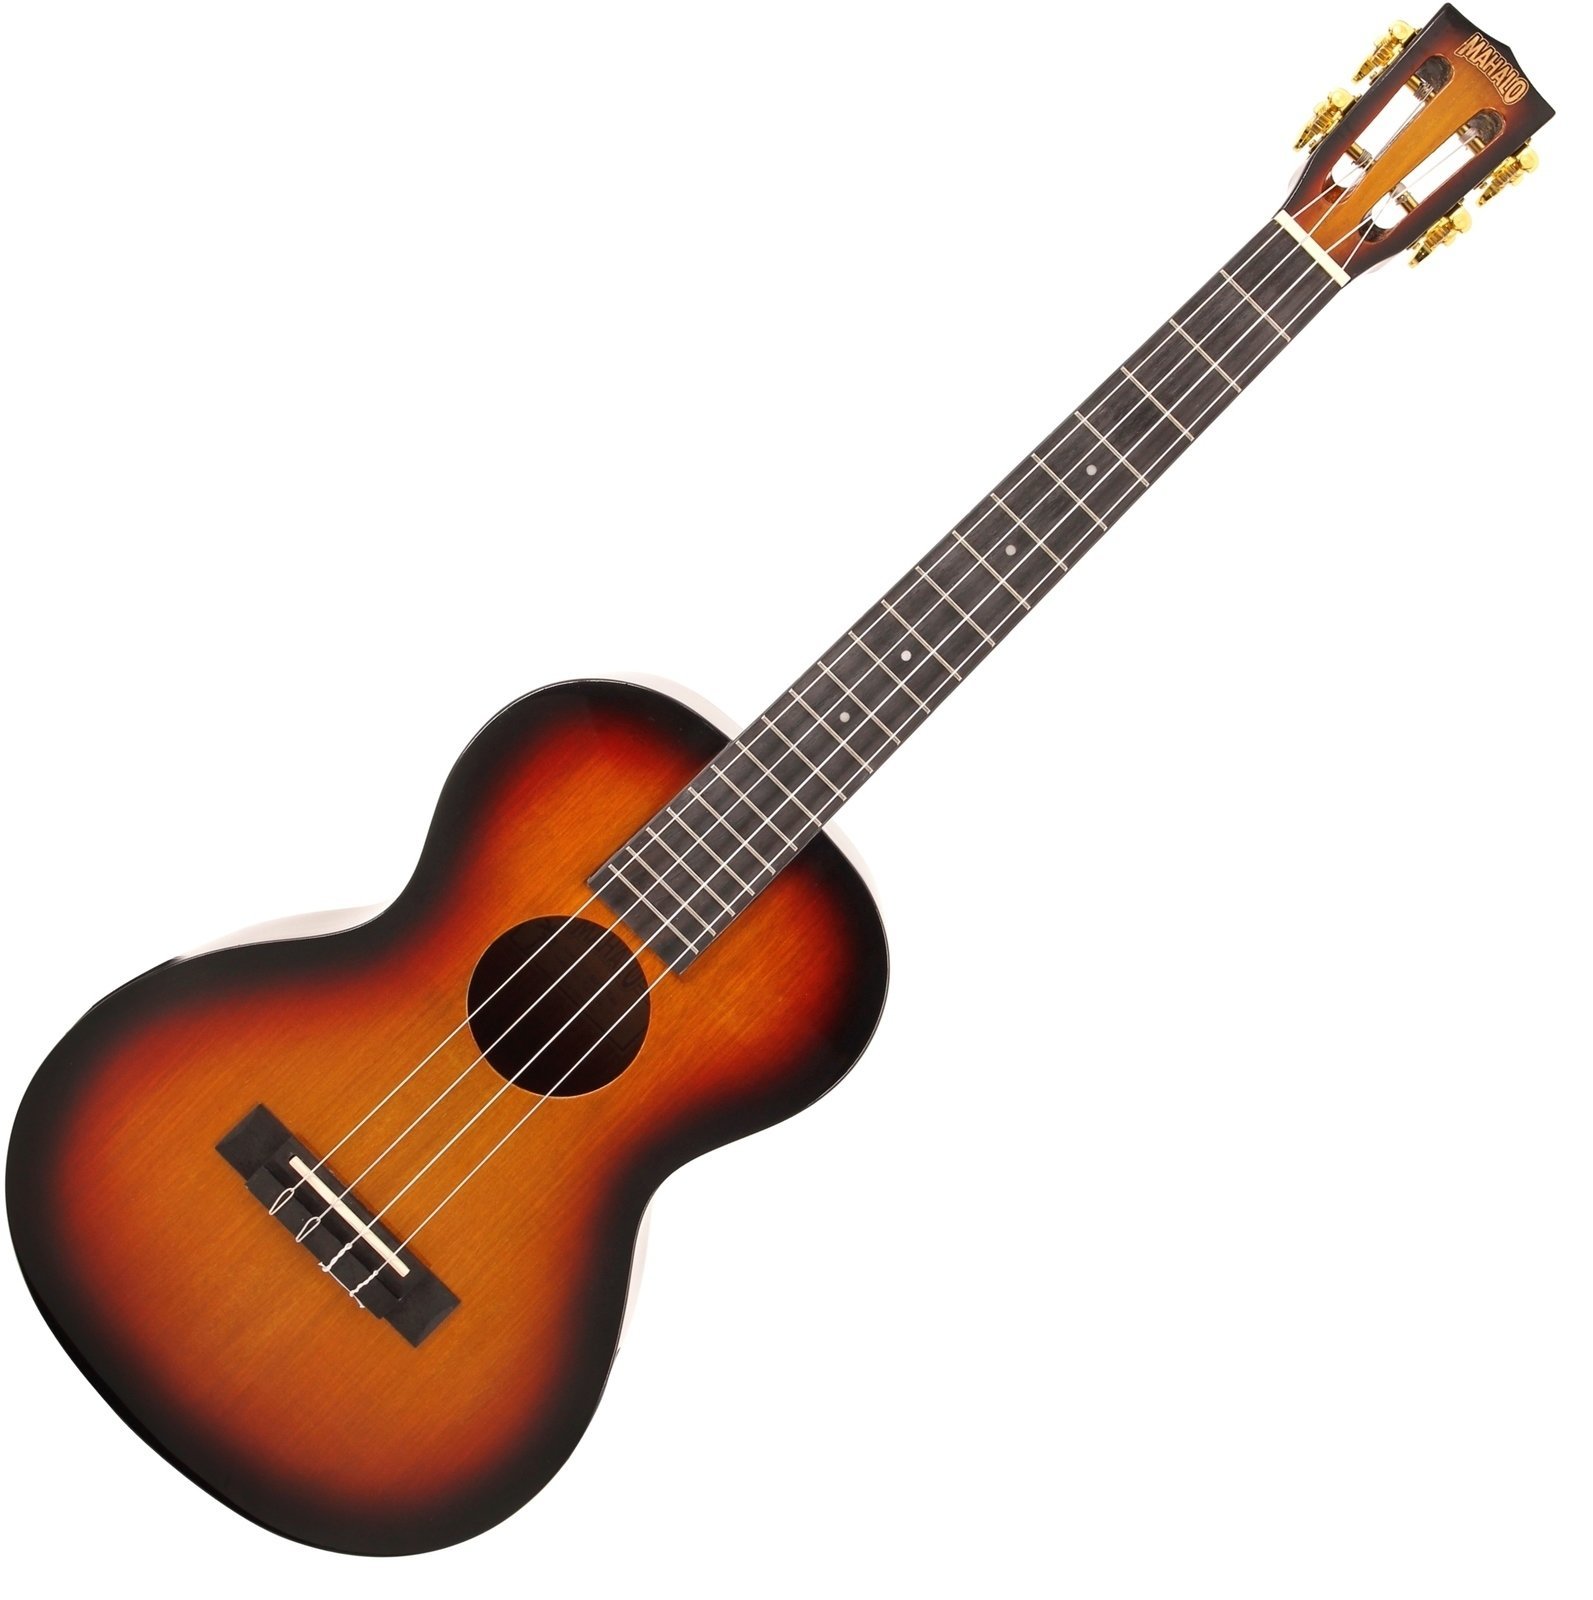 Bariton ukulele Mahalo MJ4 Bariton ukulele 3-Tone Sunburst